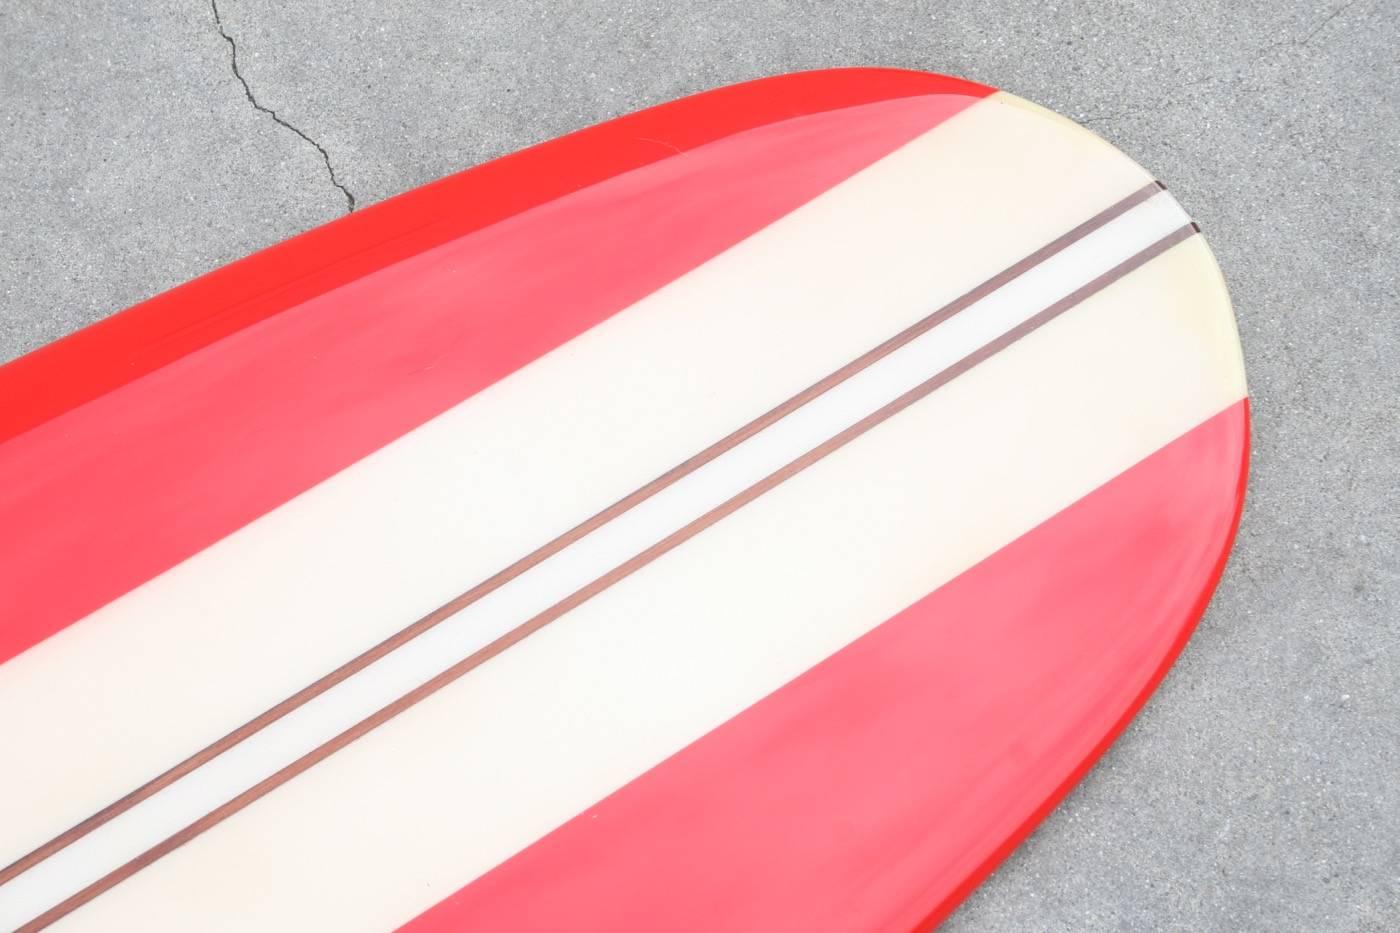 Fiberglass 1960s Surfboard by CON, Santa Monica California, 1960s, Fully Restored For Sale